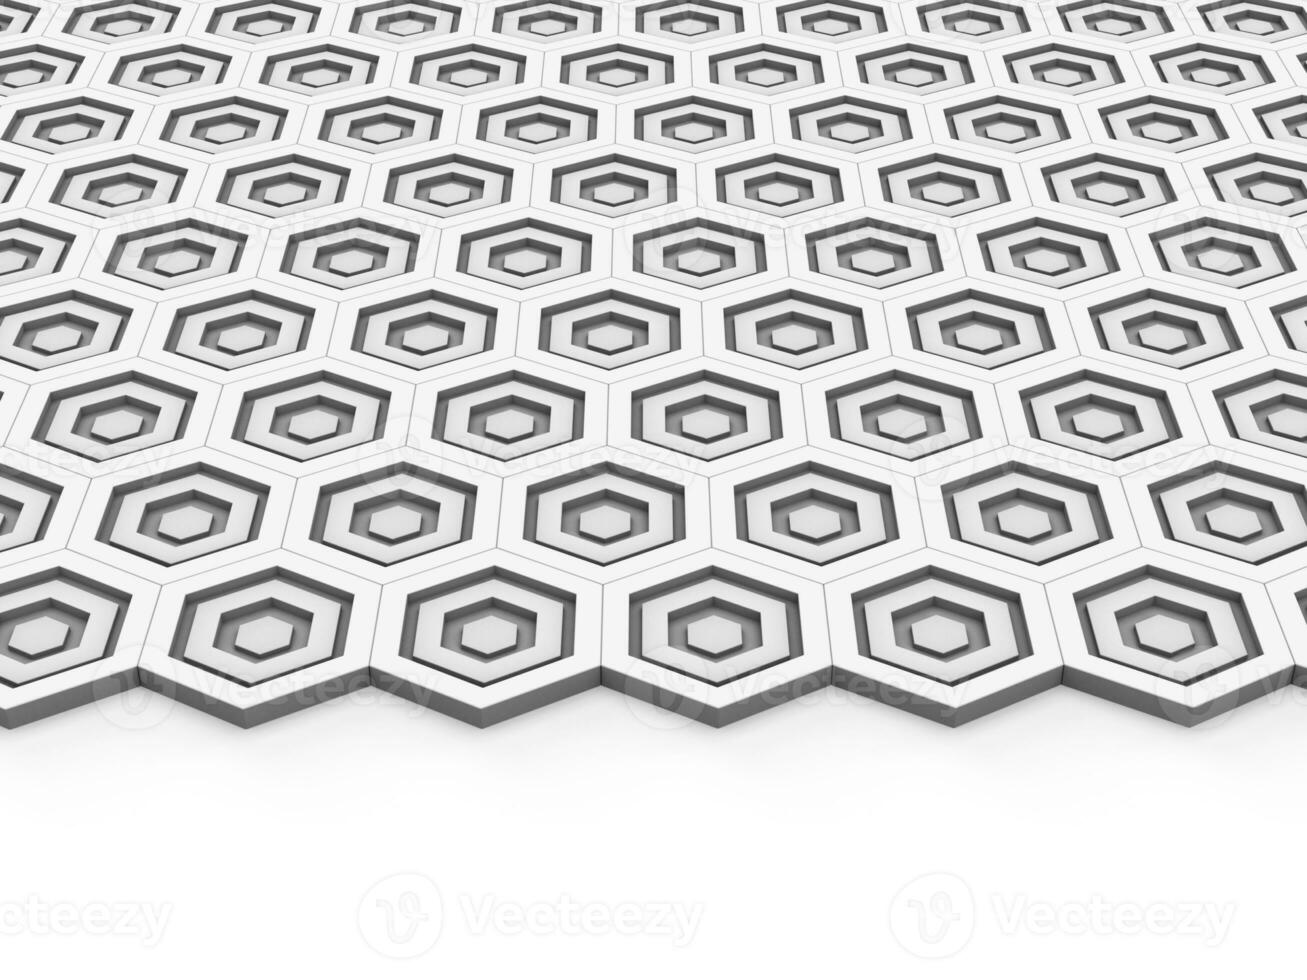 Hoi tech abstract wit zeshoek vormen achtergrond foto